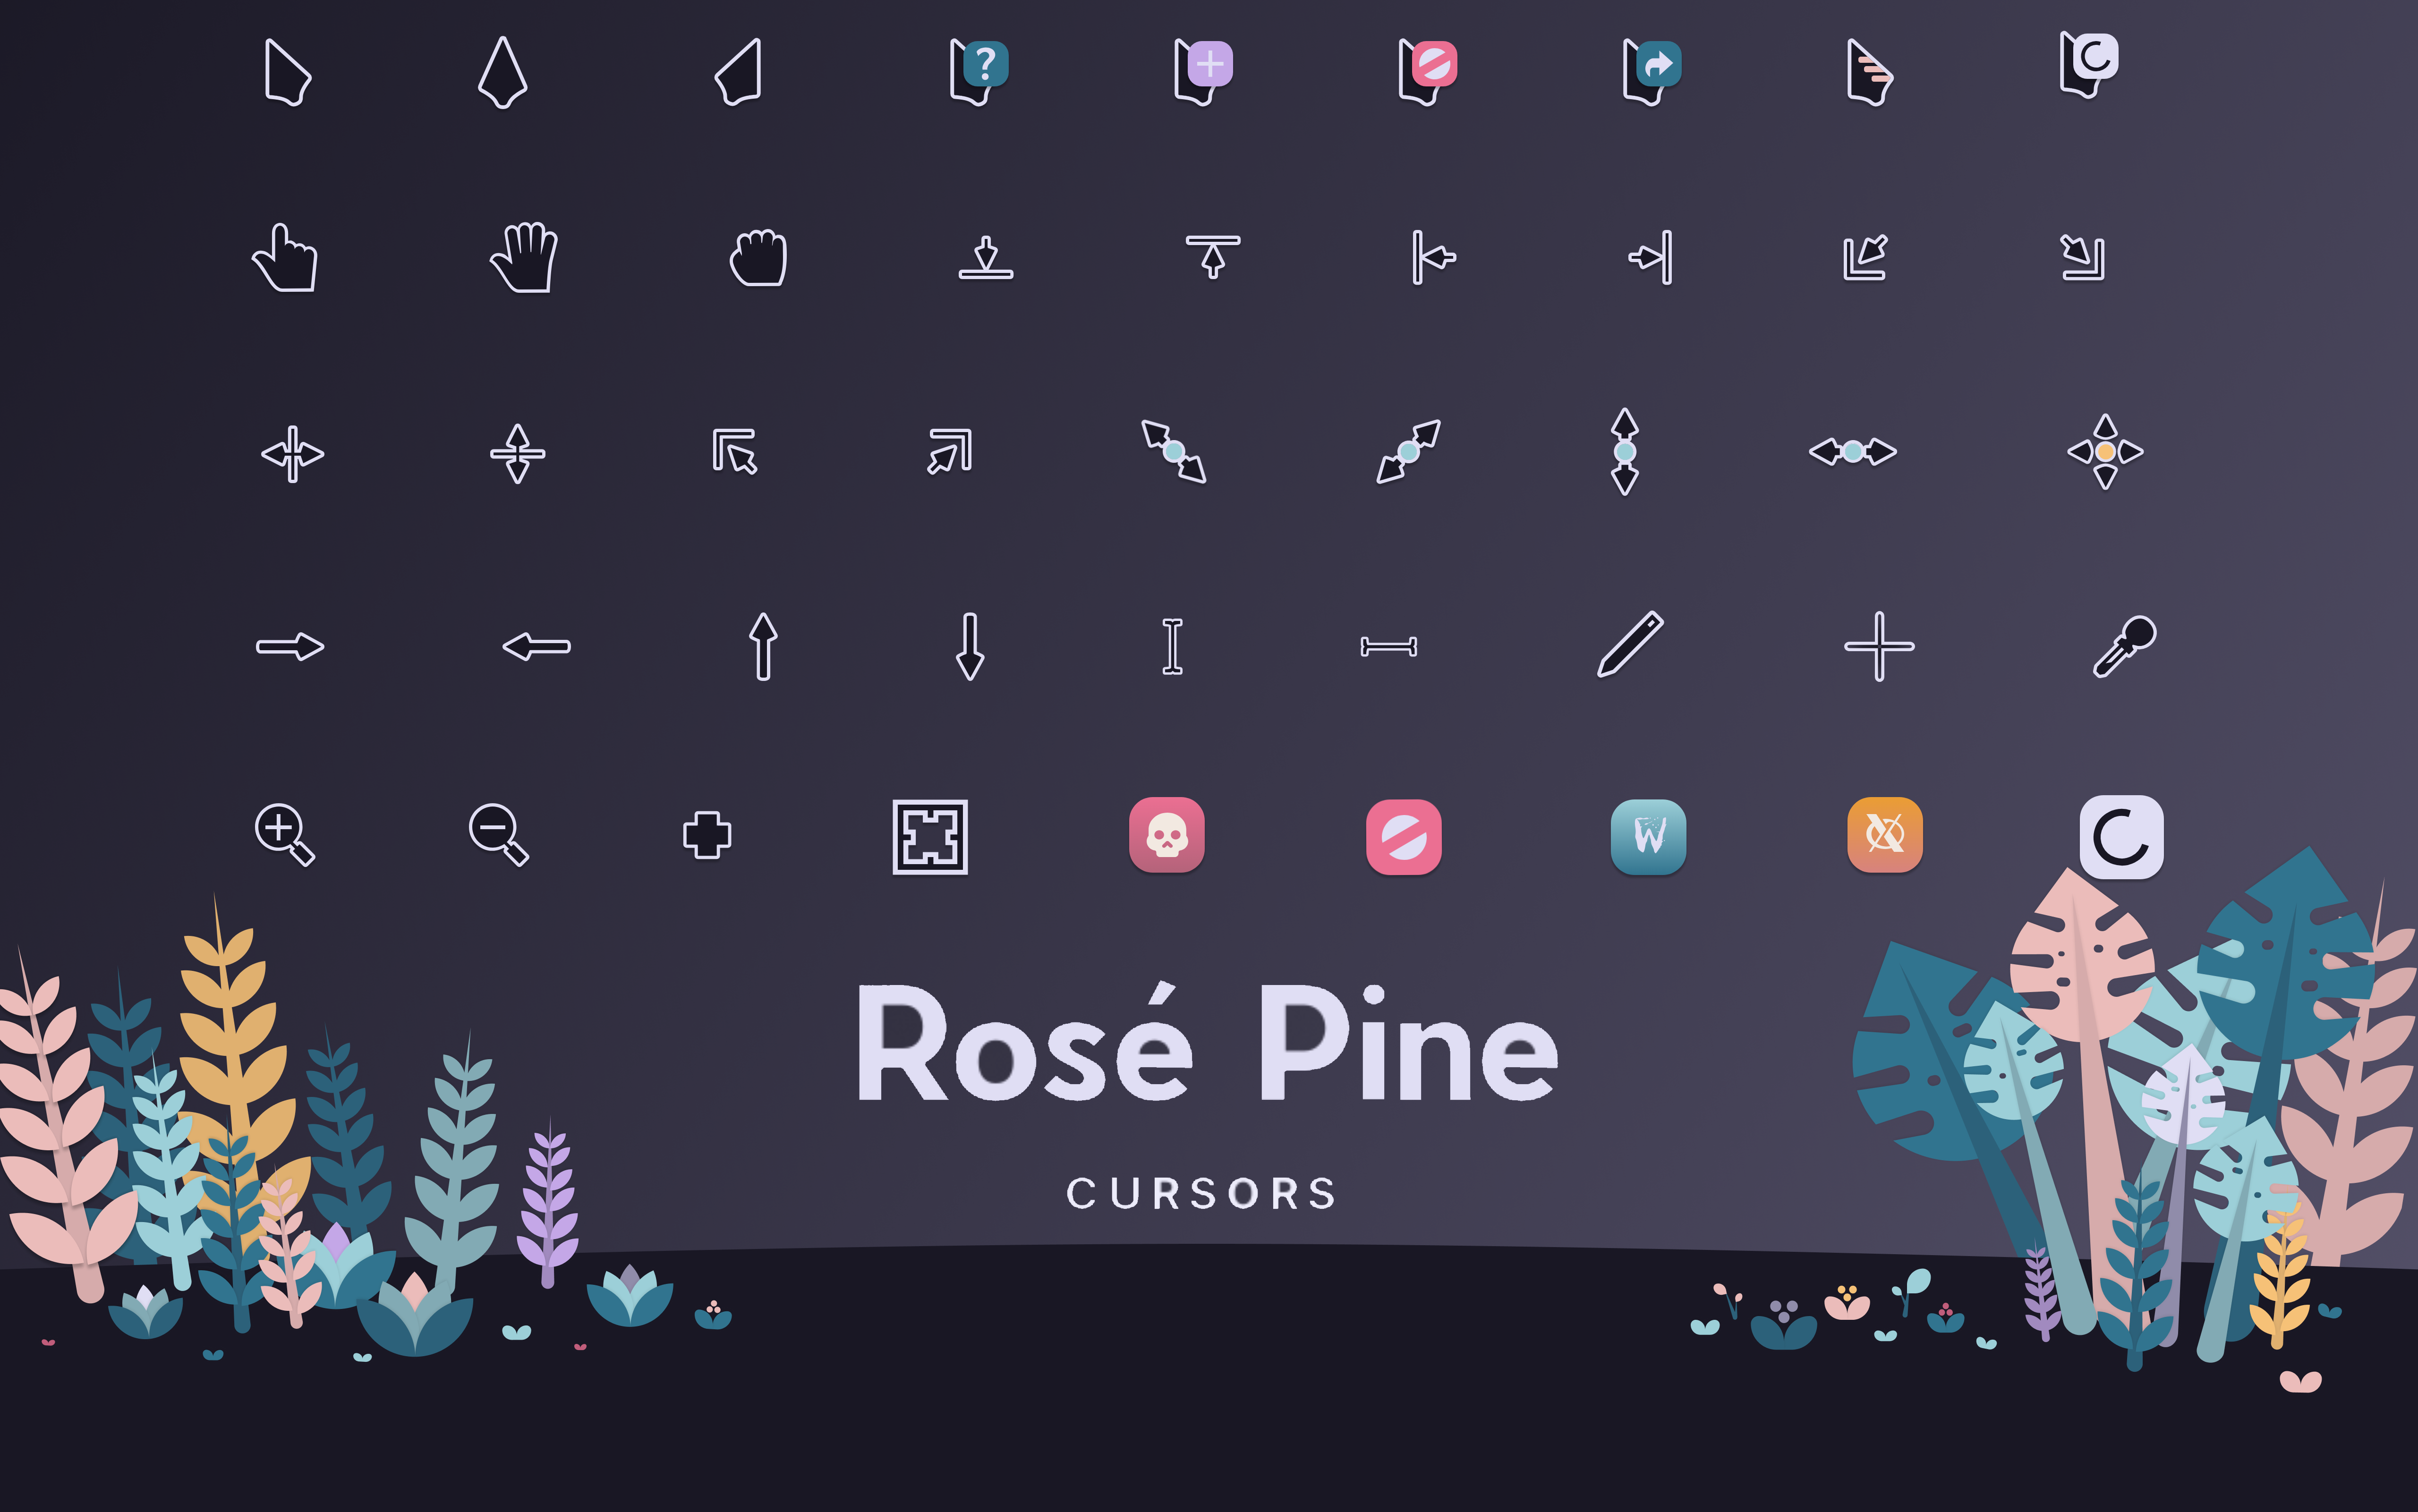 Rosé Pine for Cursors